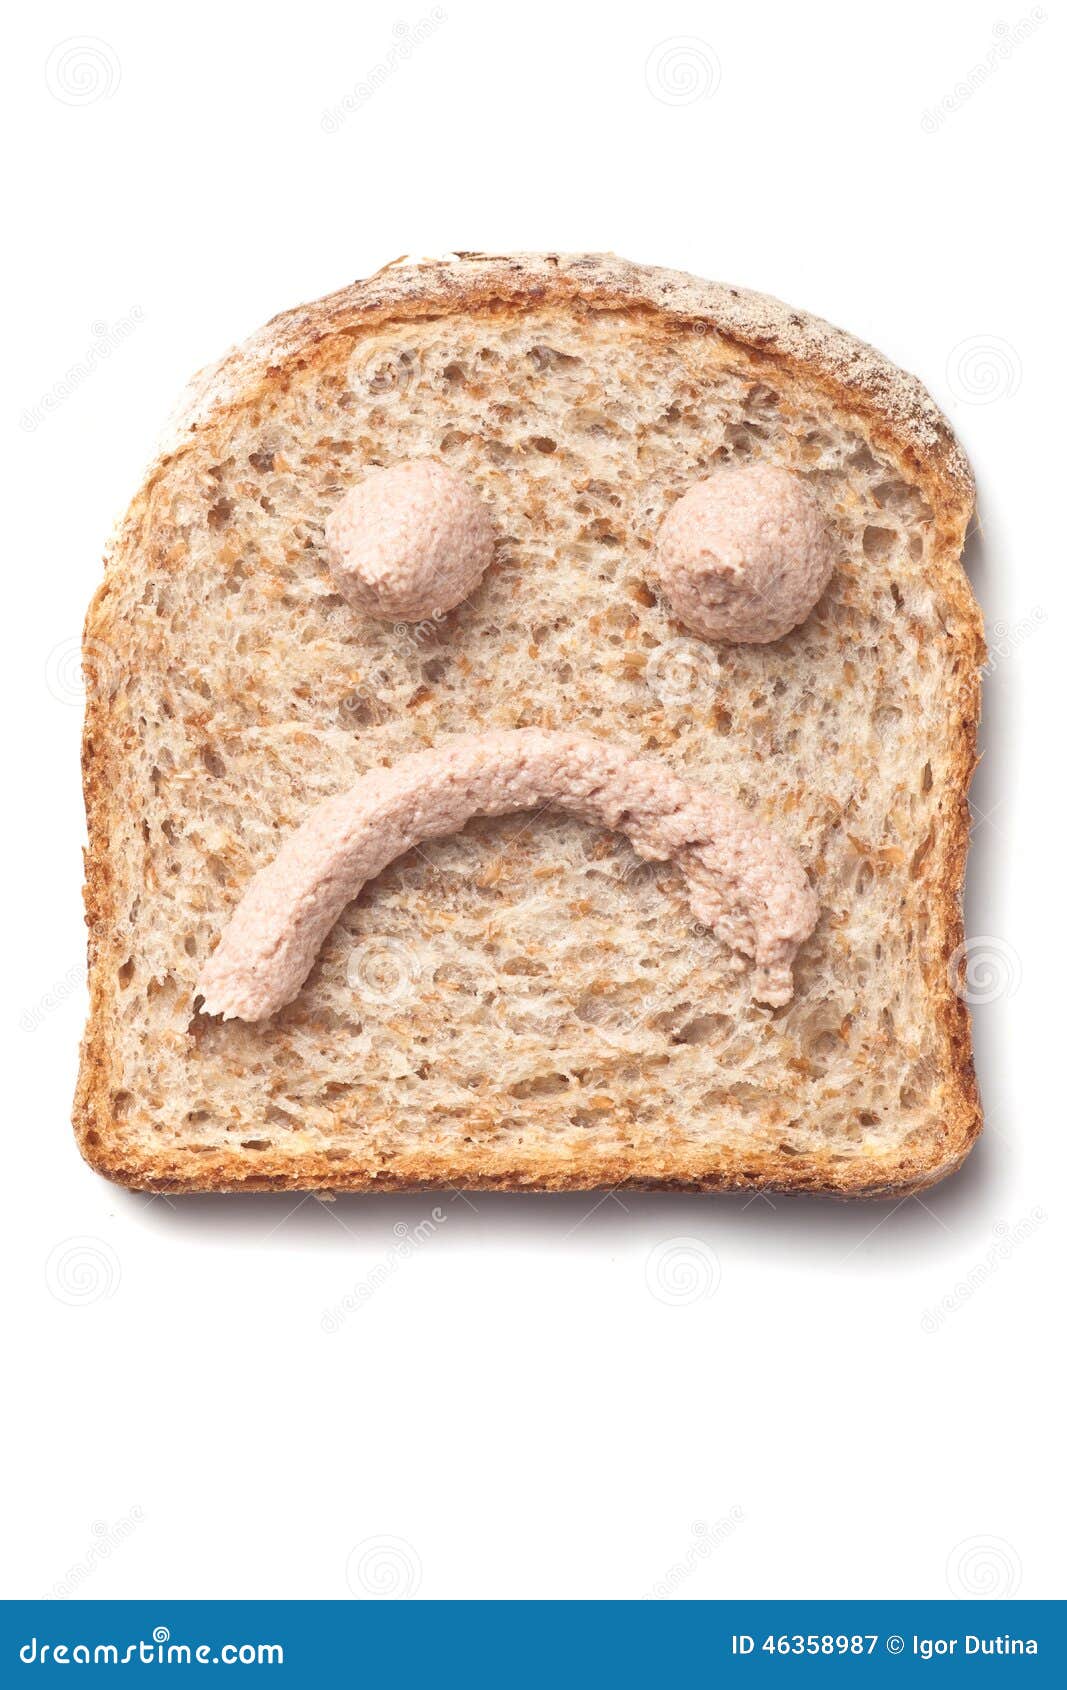 pÃÂ¢tÃÂ© spread smiley on slice of bread